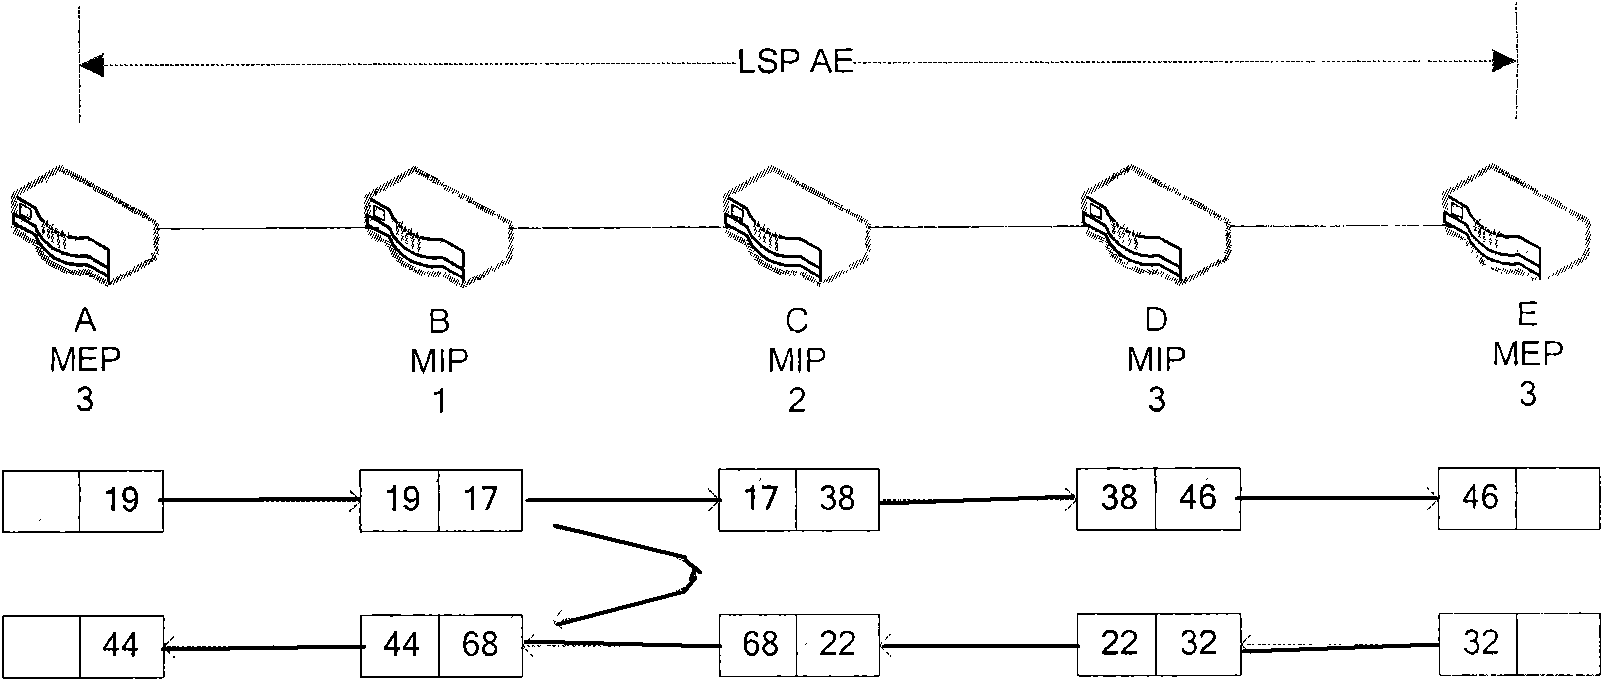 OAM component communication mechanism based on MPLS-TP signing label